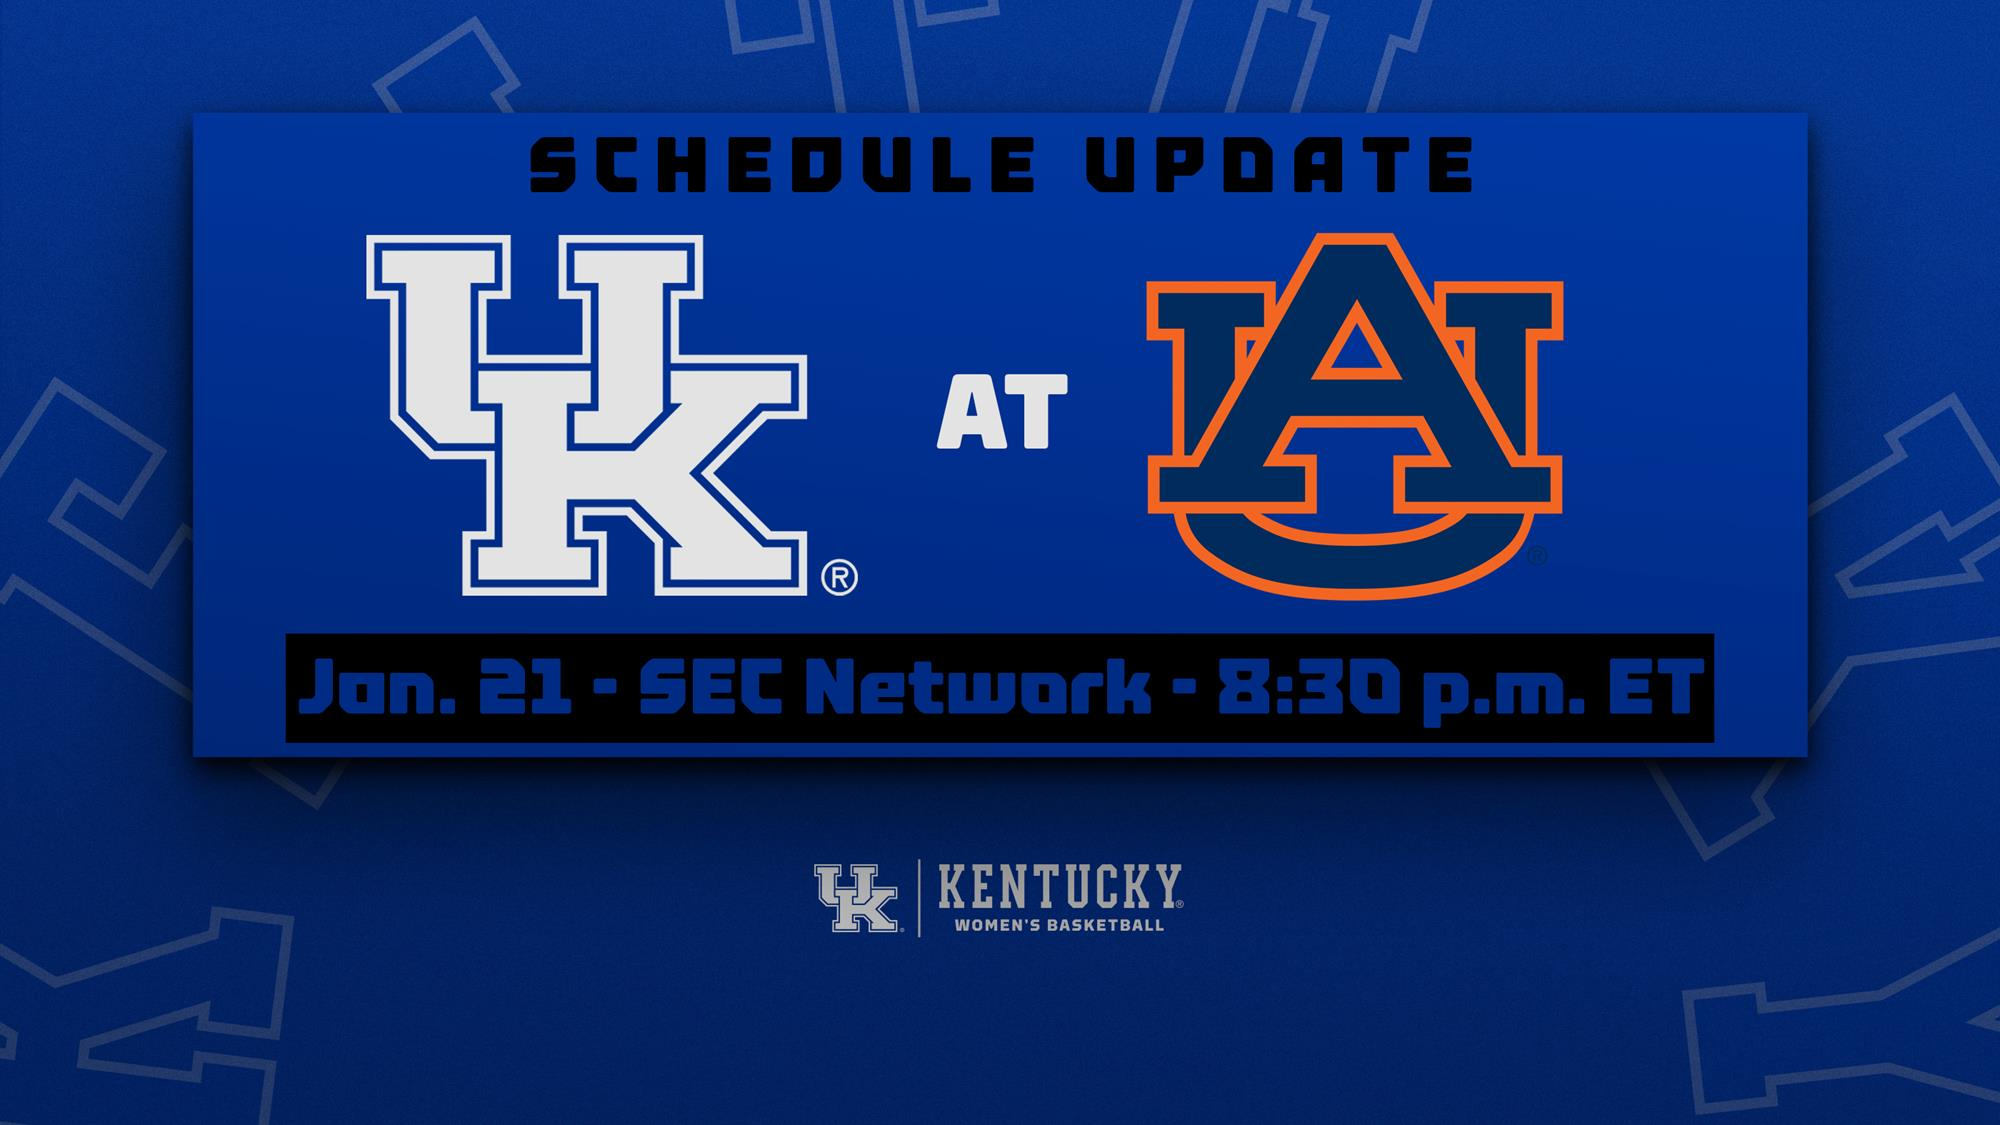 Kentucky at Auburn Rescheduled to Thursday, January 21